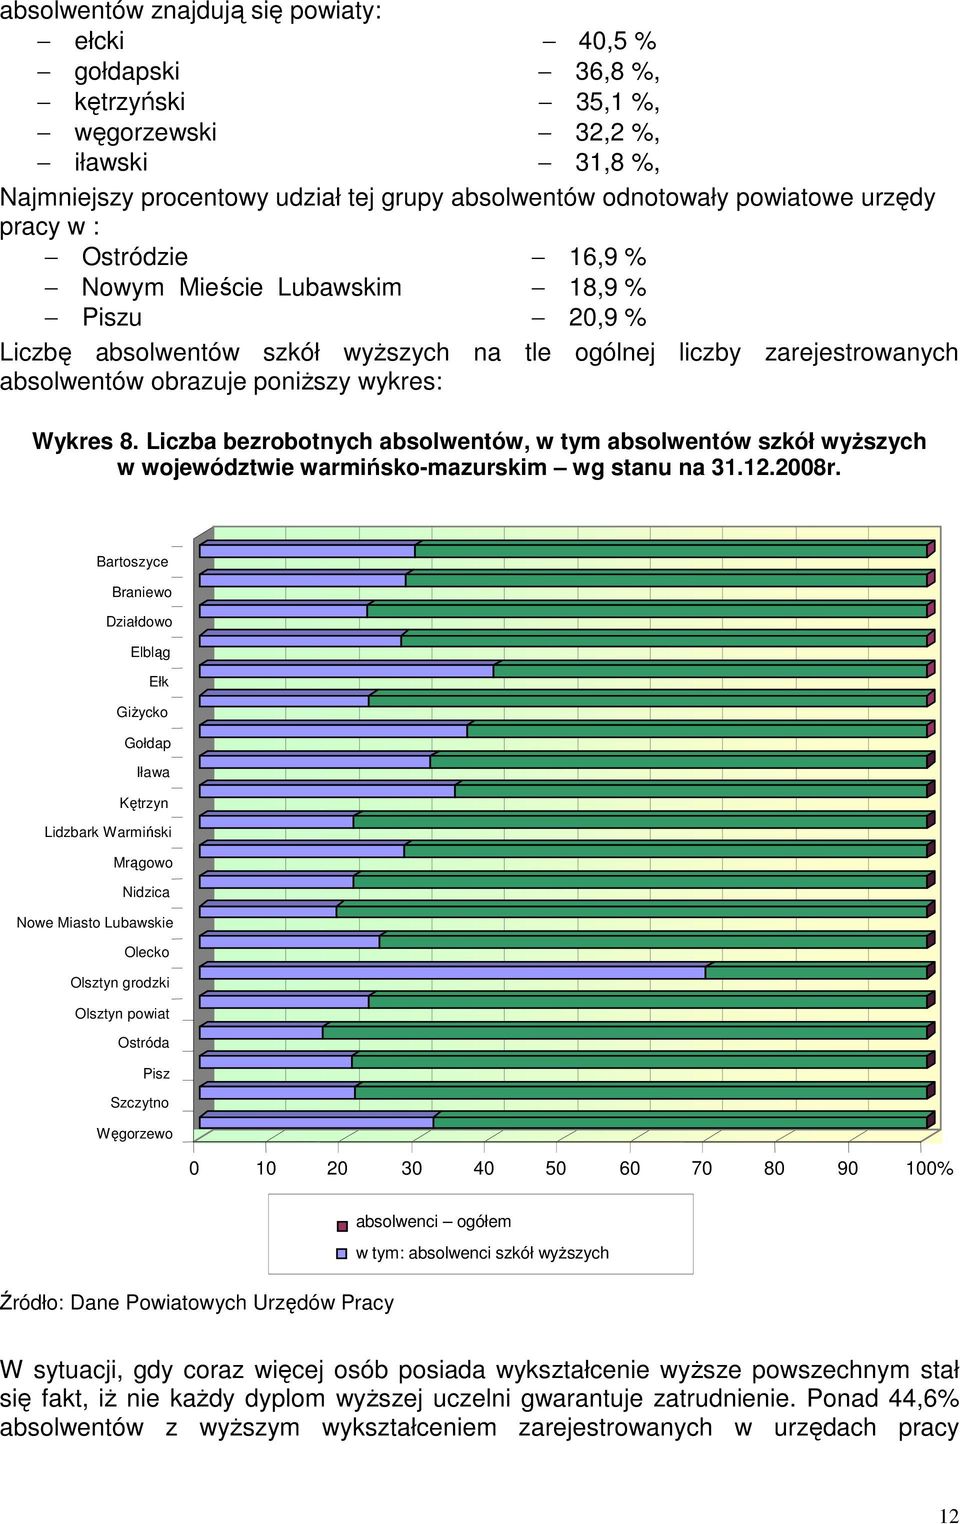 Liczba bezrobotnych absolwentów, w tym absolwentów szkół wyŝszych w województwie warmińsko-mazurskim wg stanu na 31.12.2008r.